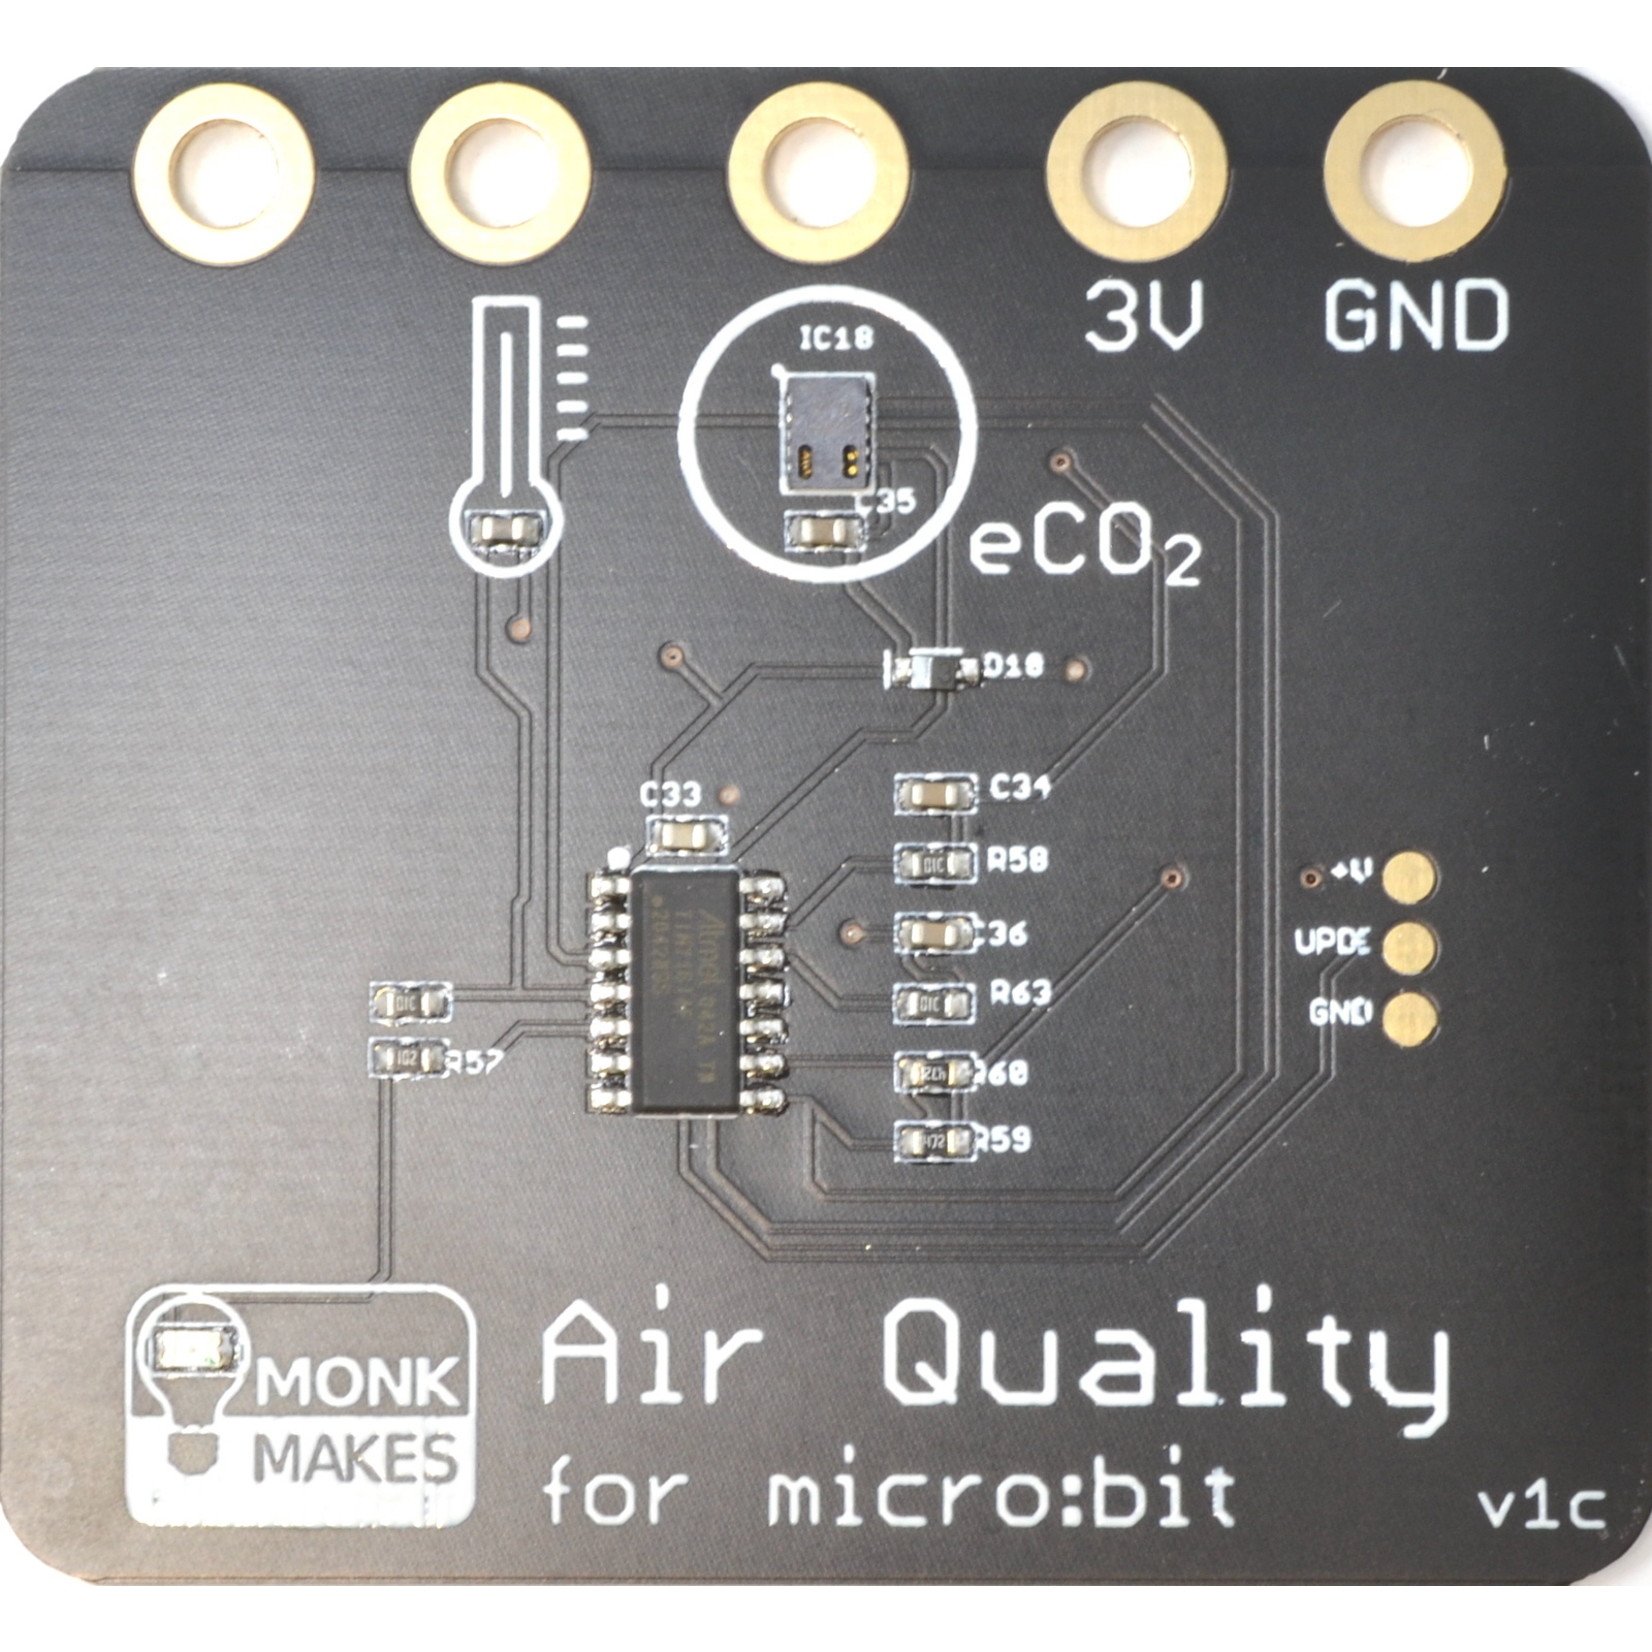 MonkMakes Luchtkwaliteit kit micro:bit